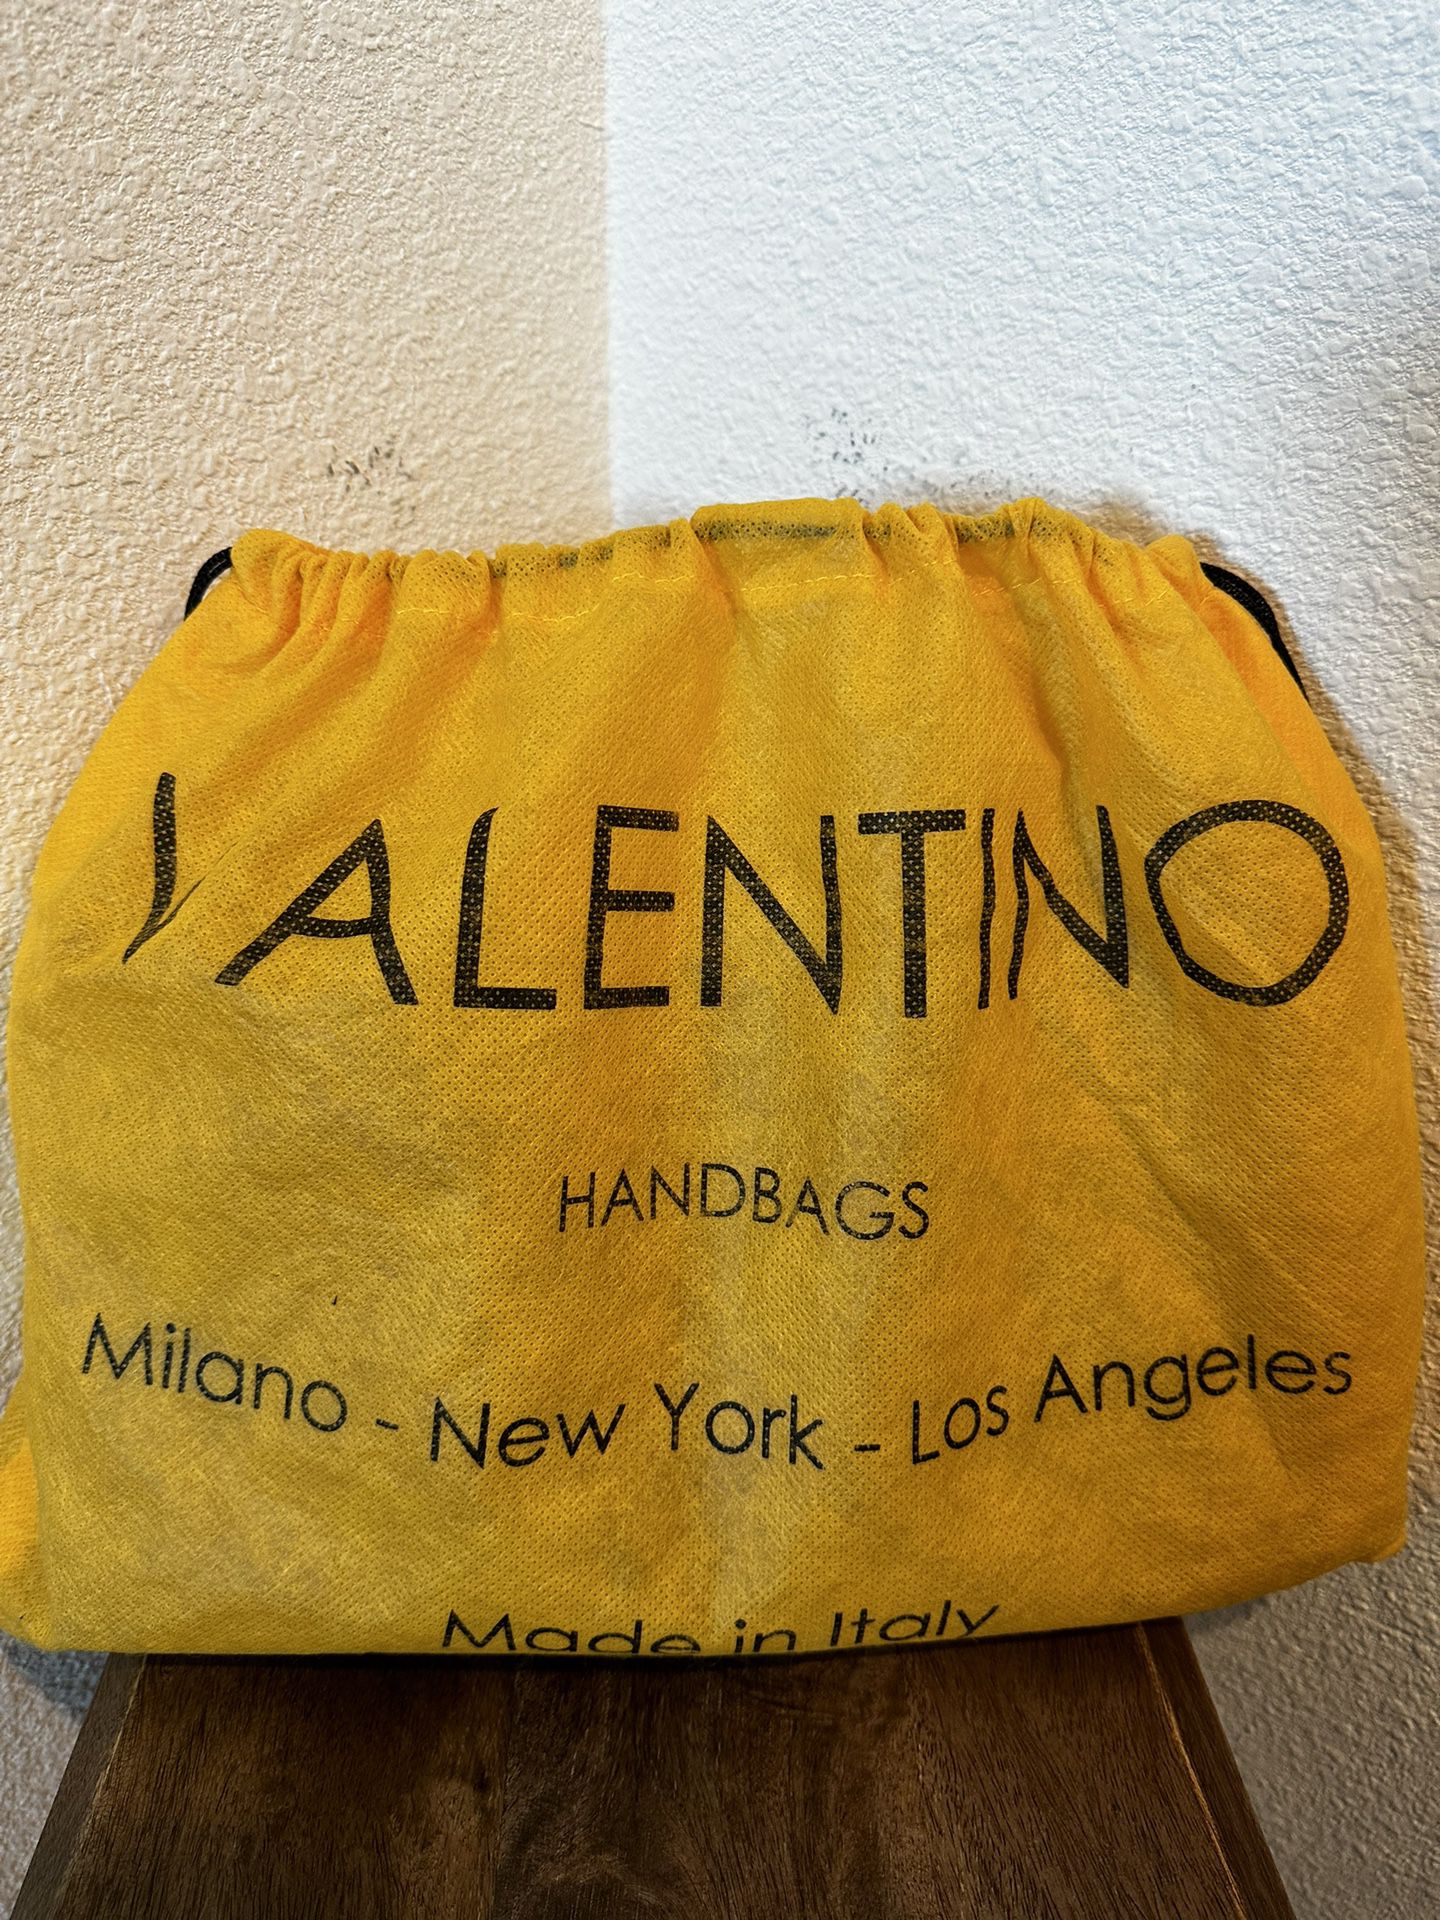 Mario Valentino Black Leather Lena Crossbody Bag - VA9303